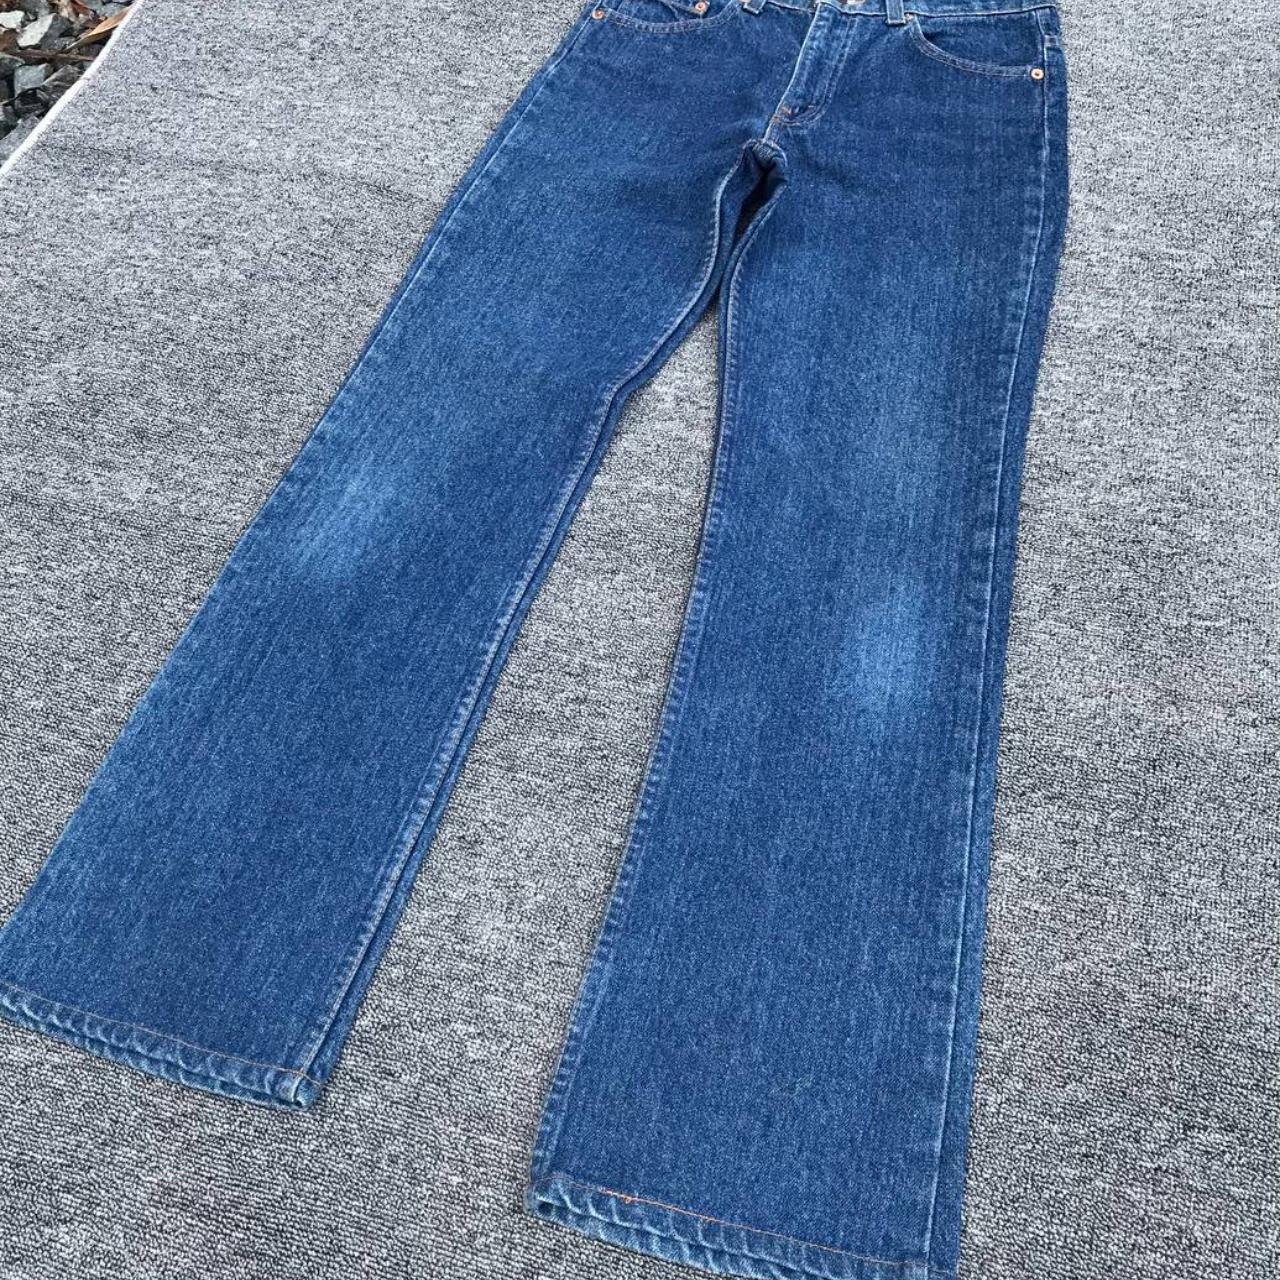 Flared Vintage Levis 517 90s USA made lightwash jean... - Depop